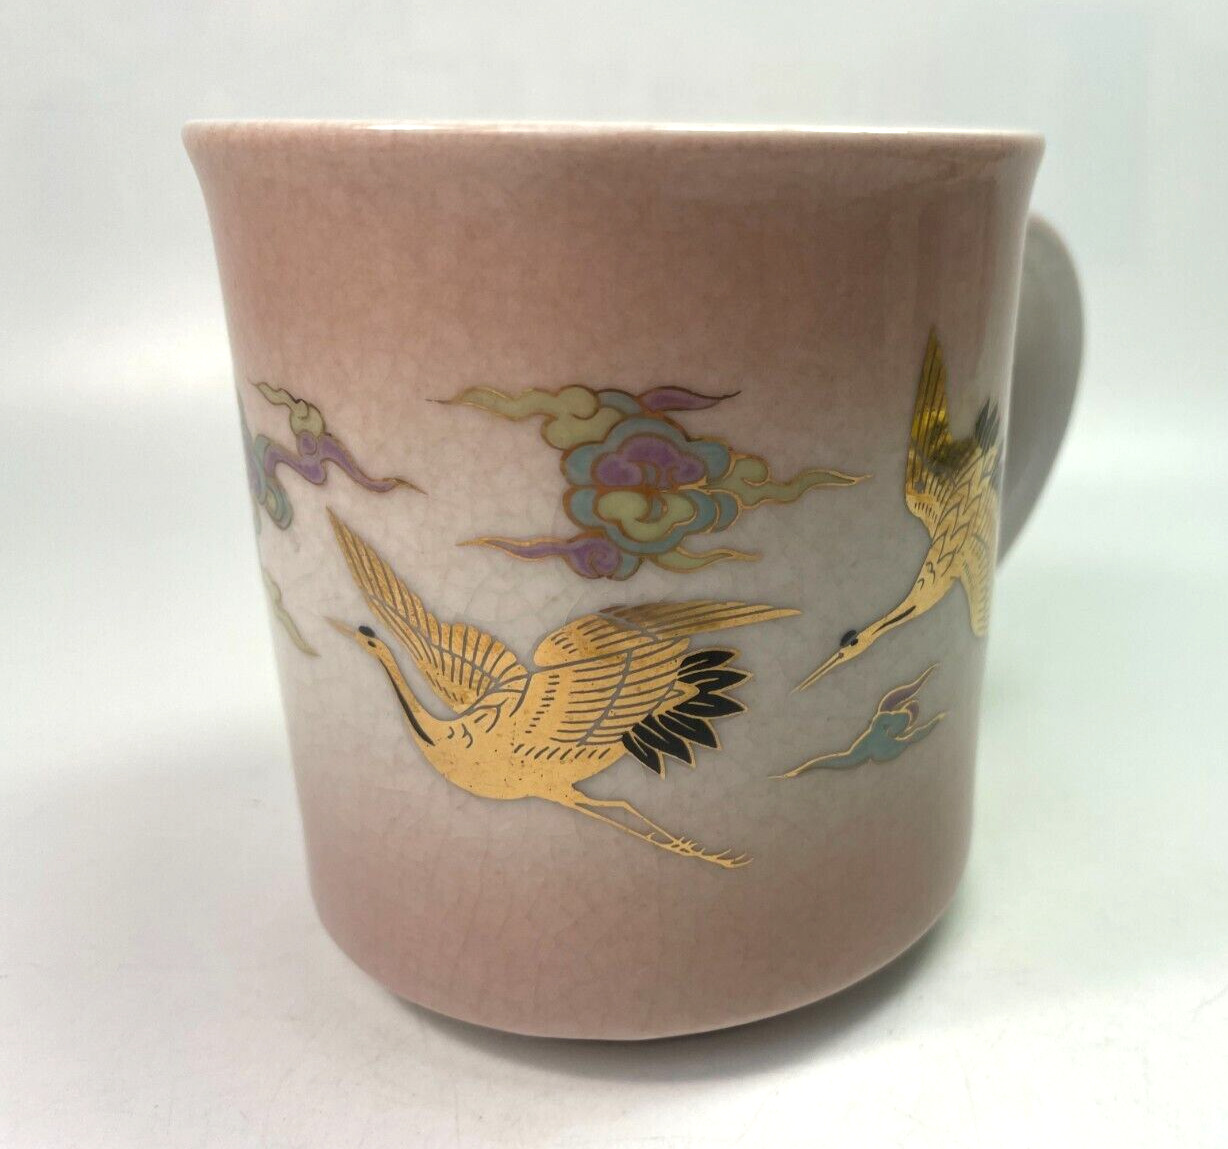 Japanese Crane Coffee Mug Nakagama Vintage 10oz Hand Printed Collectible Cup B62